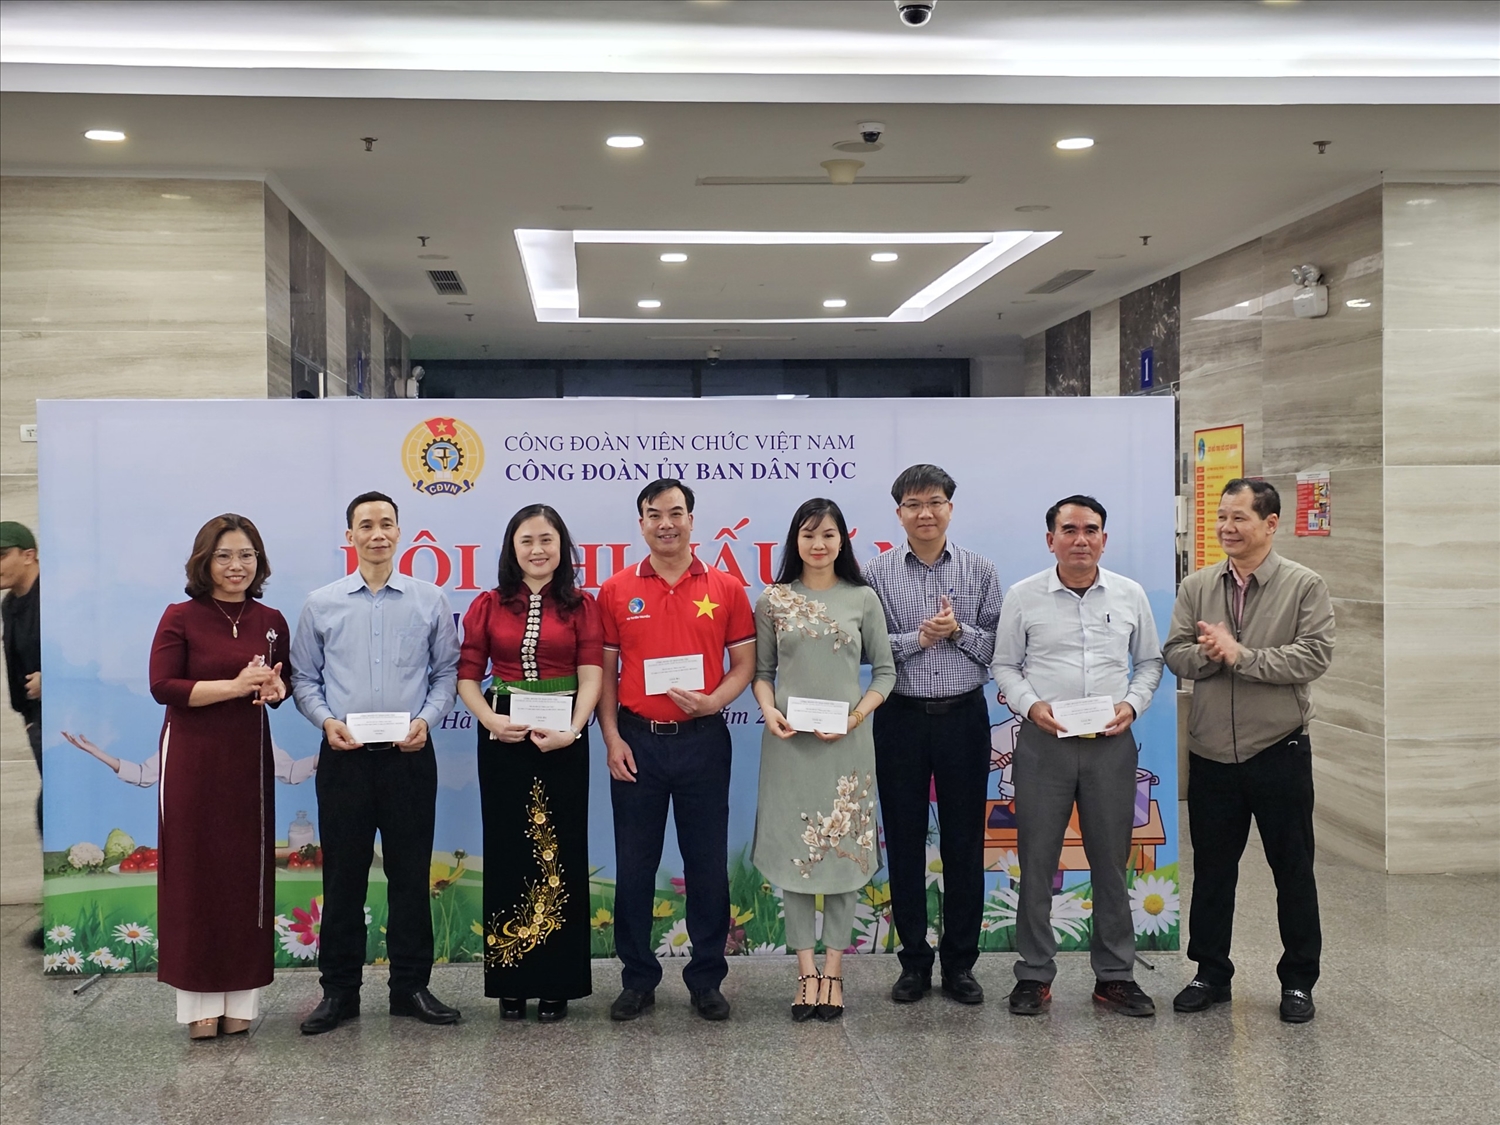 Bà Nguyễn Thu Minh - Chánh Văn phòng Ban Cán sự đảng và ông Lý Bình Huy - Phó Vụ trưởng Vụ Tổ chức cán bộ trao giải Ba cho các đội đoạt giải